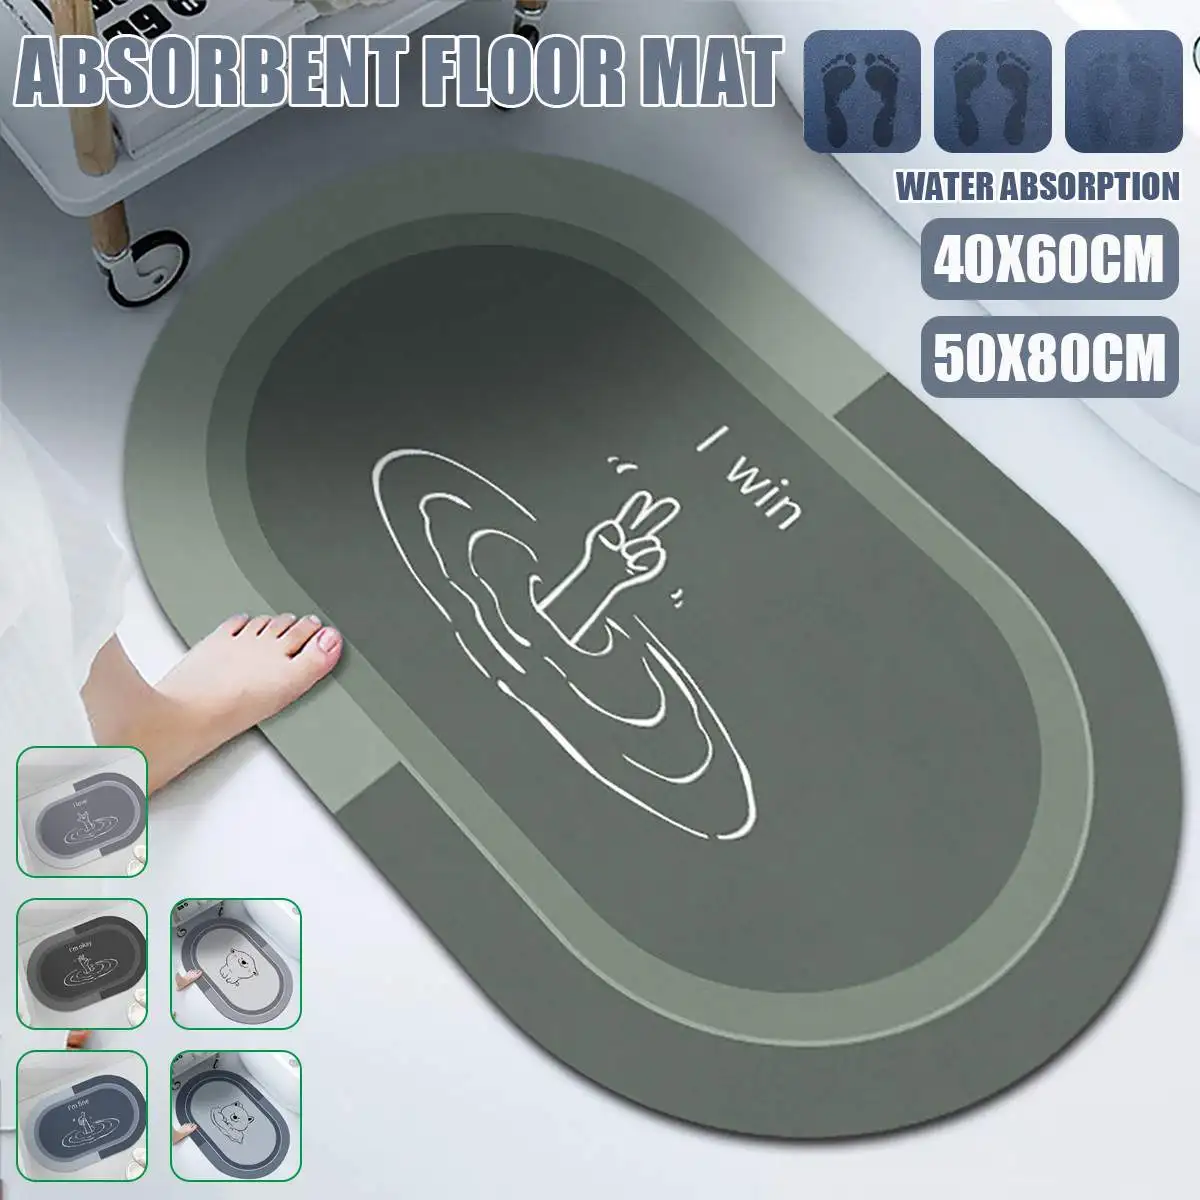 

50x80cm Super Absorbent Bath Mat Quick Drying Bathroom Rug Non-slip Entrance Doormat Nappa Skin Floor Mats Toilet Carpet Home